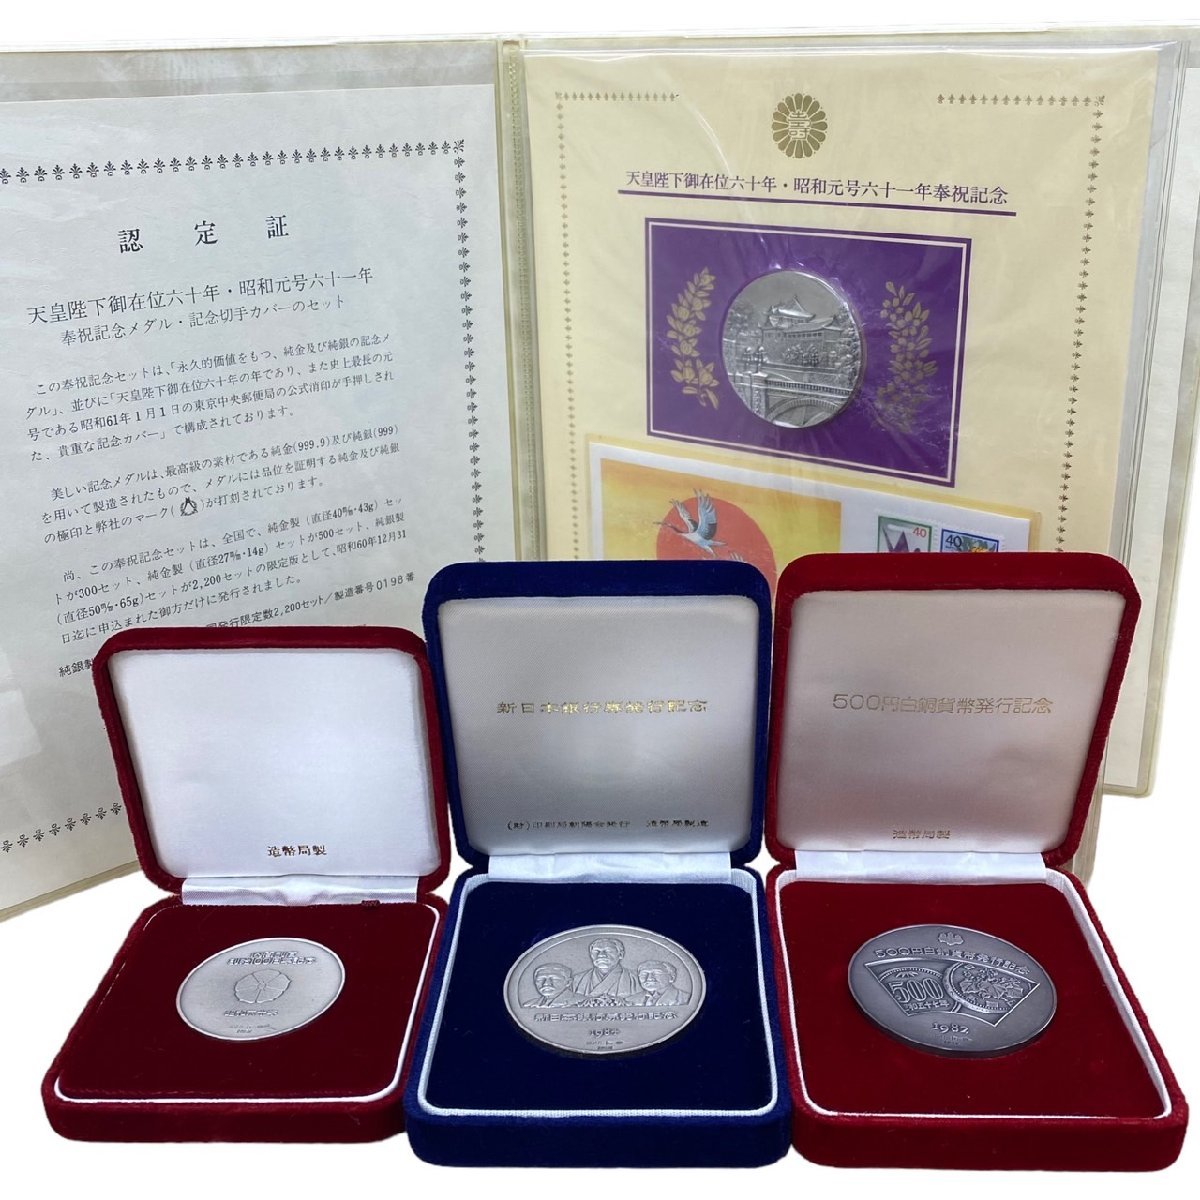 ◇◇◇ まとめ売り記念メダル天皇陛下御在位60年奉祝記念貨幣発行銀行